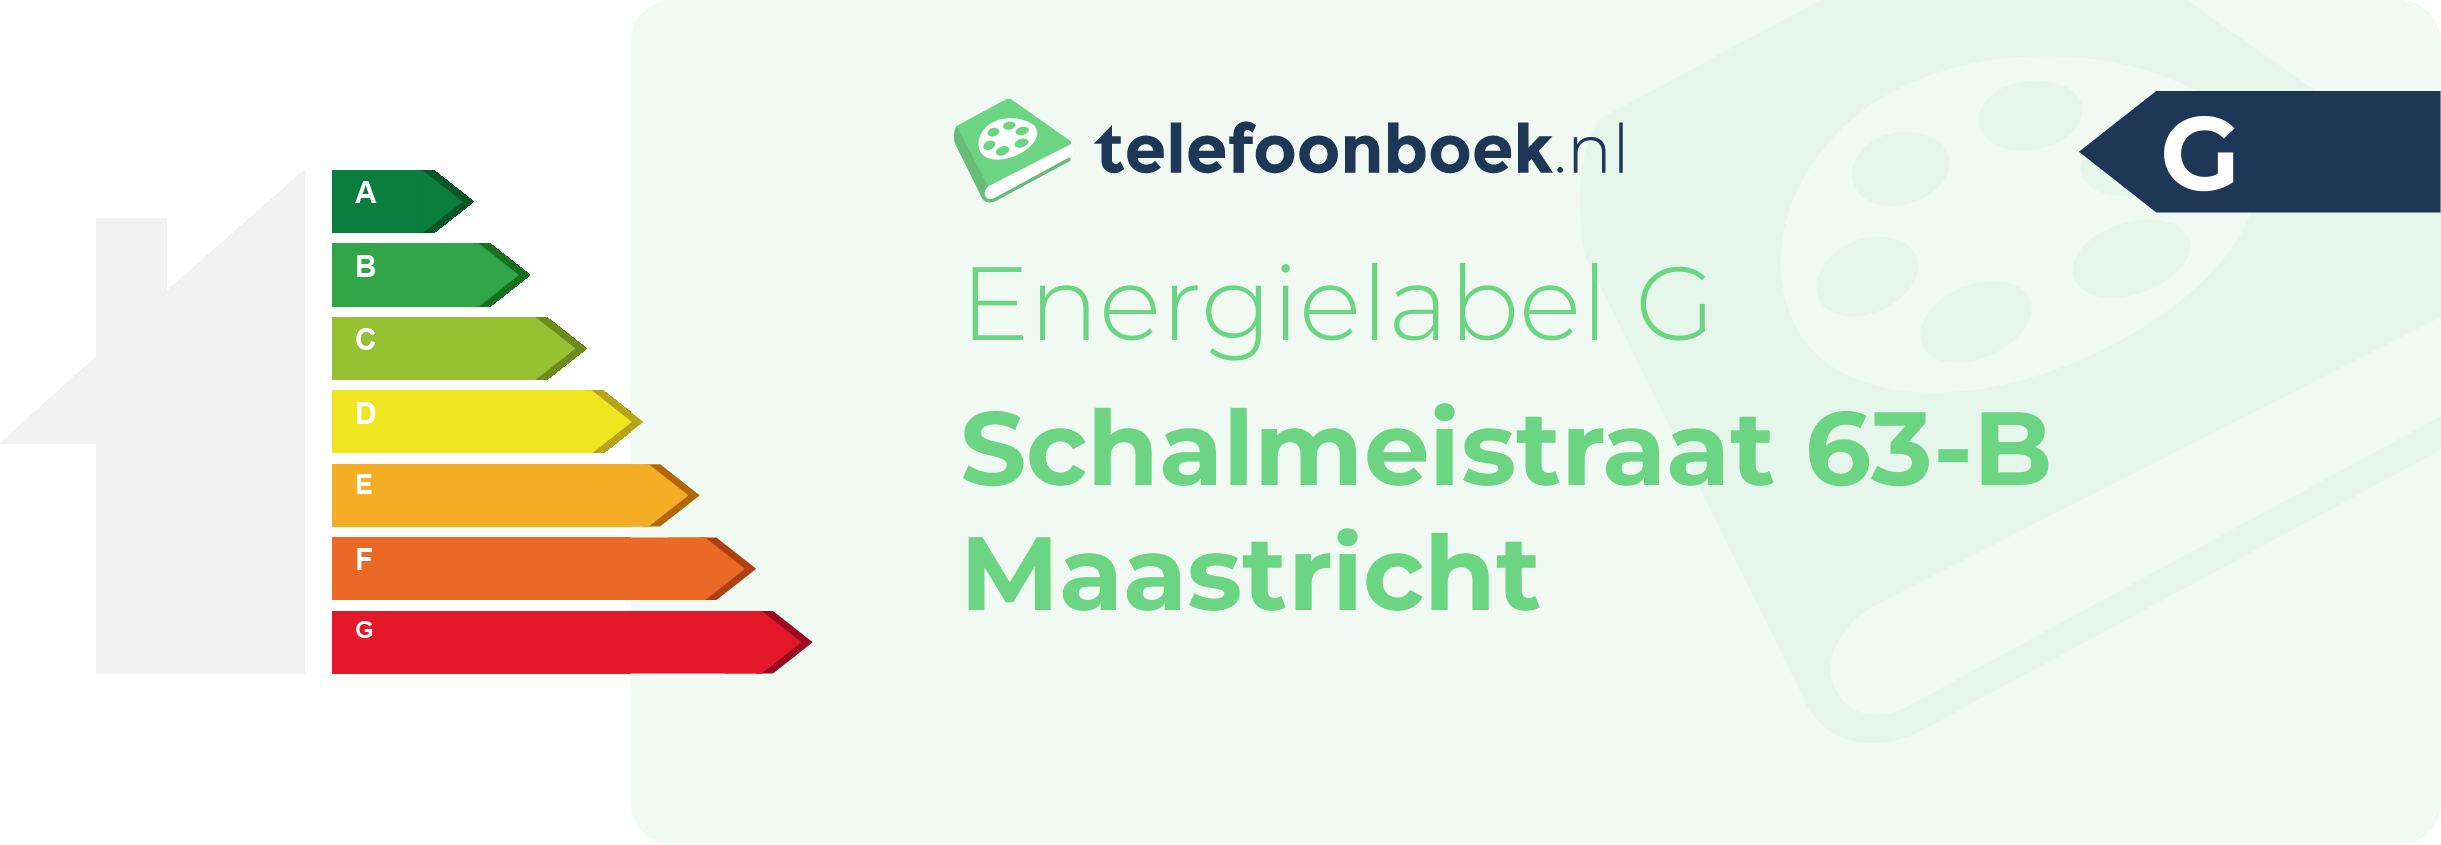 Energielabel Schalmeistraat 63-B Maastricht